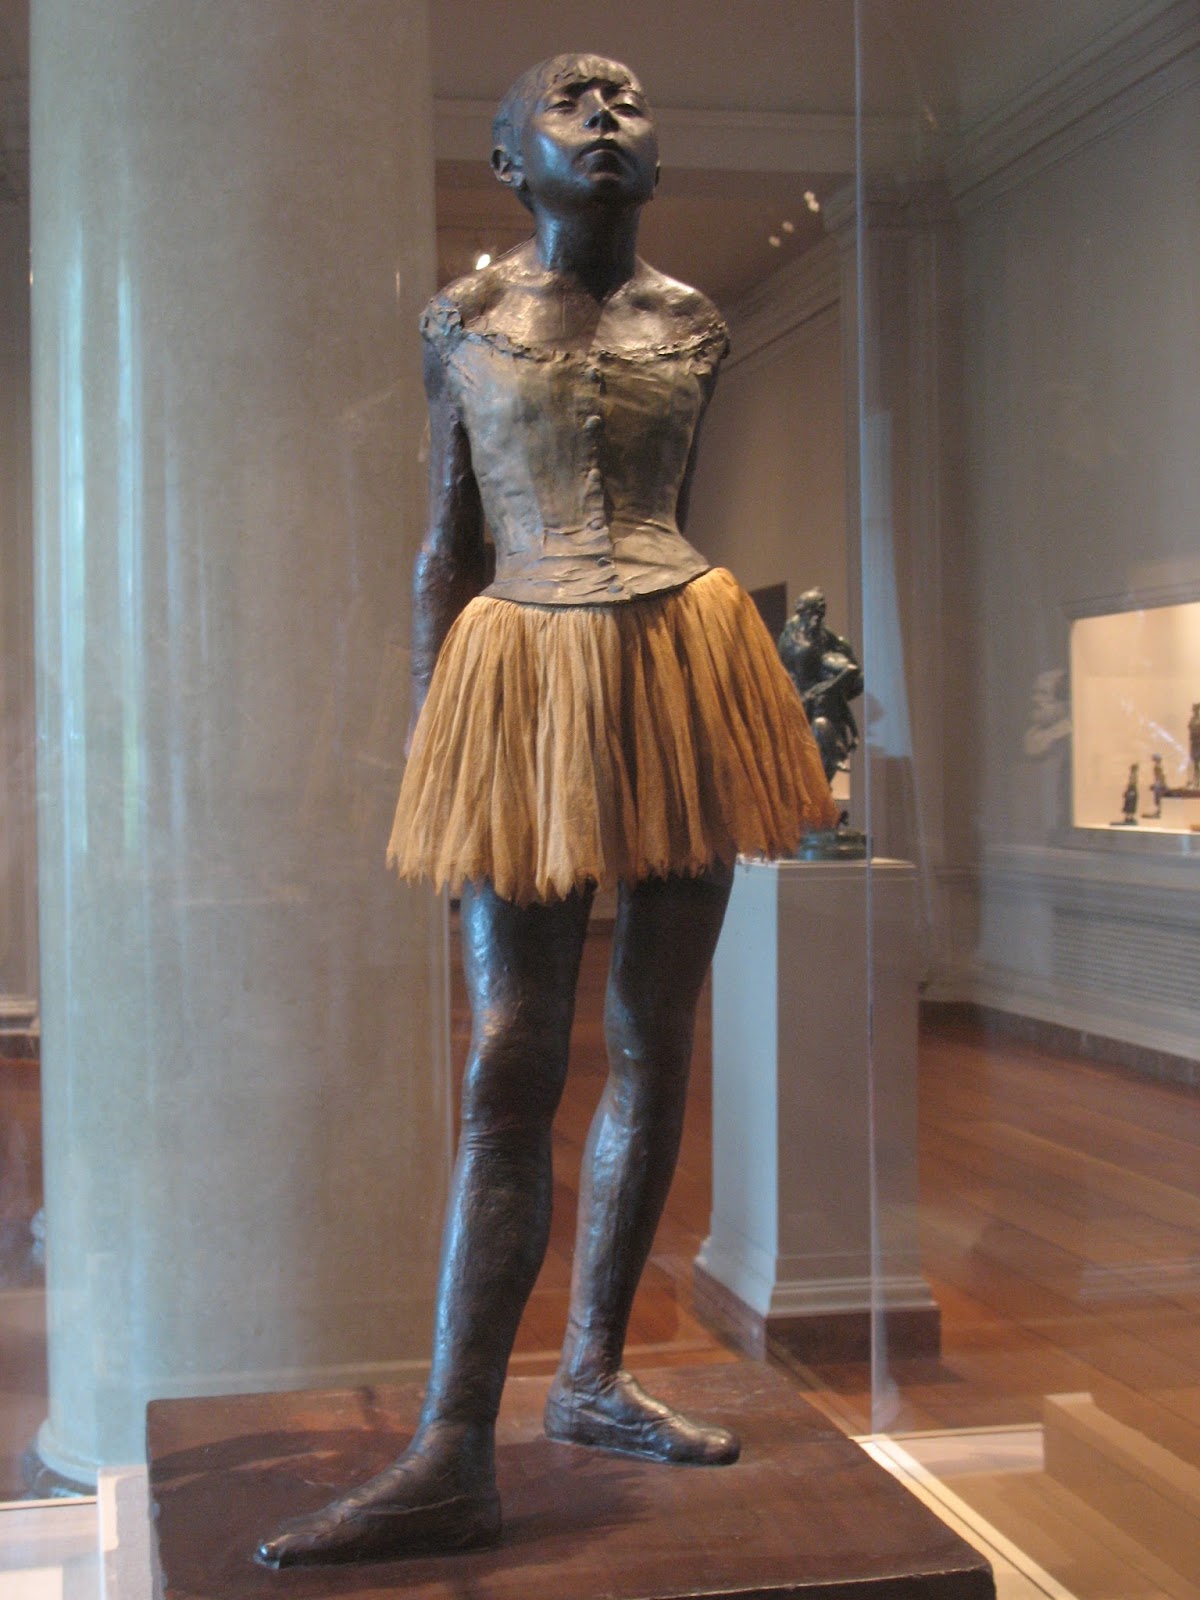 Edgar+Degas-1834-1917 (533).JPG